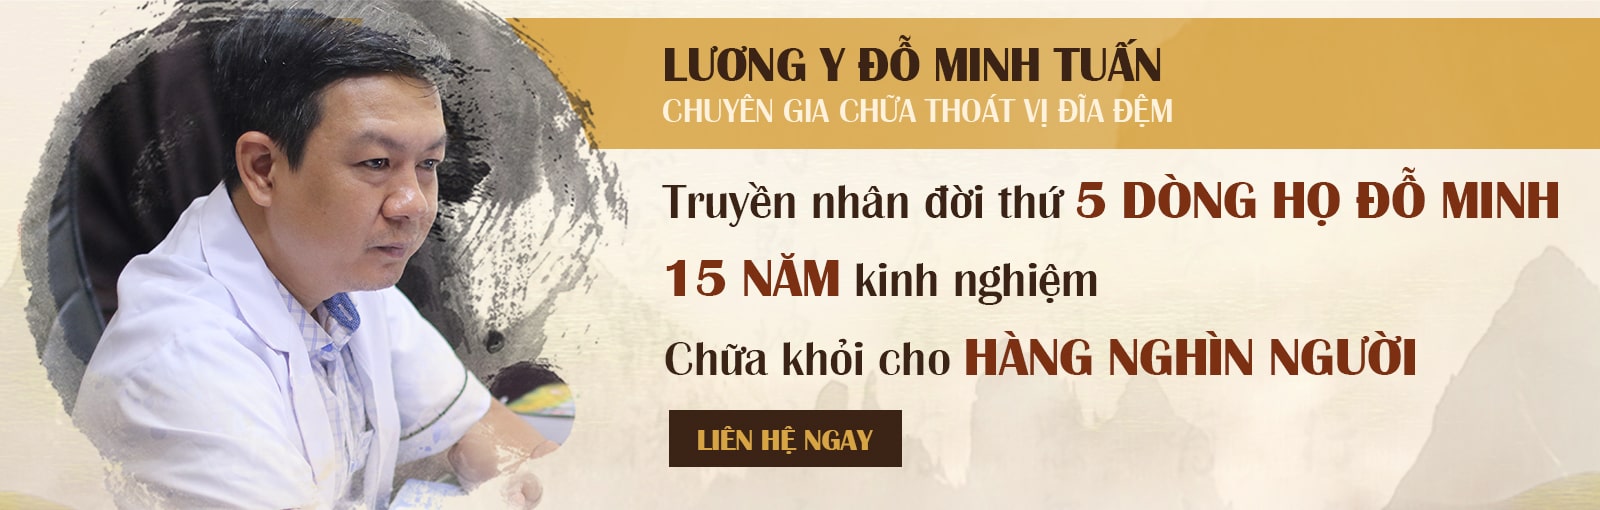 Chân dung bác sĩ, lương y Đỗ Minh Tuấn - Giám đốc chuyên môn nhà thuốc Nam gia truyền dòng họ Đỗ Minh